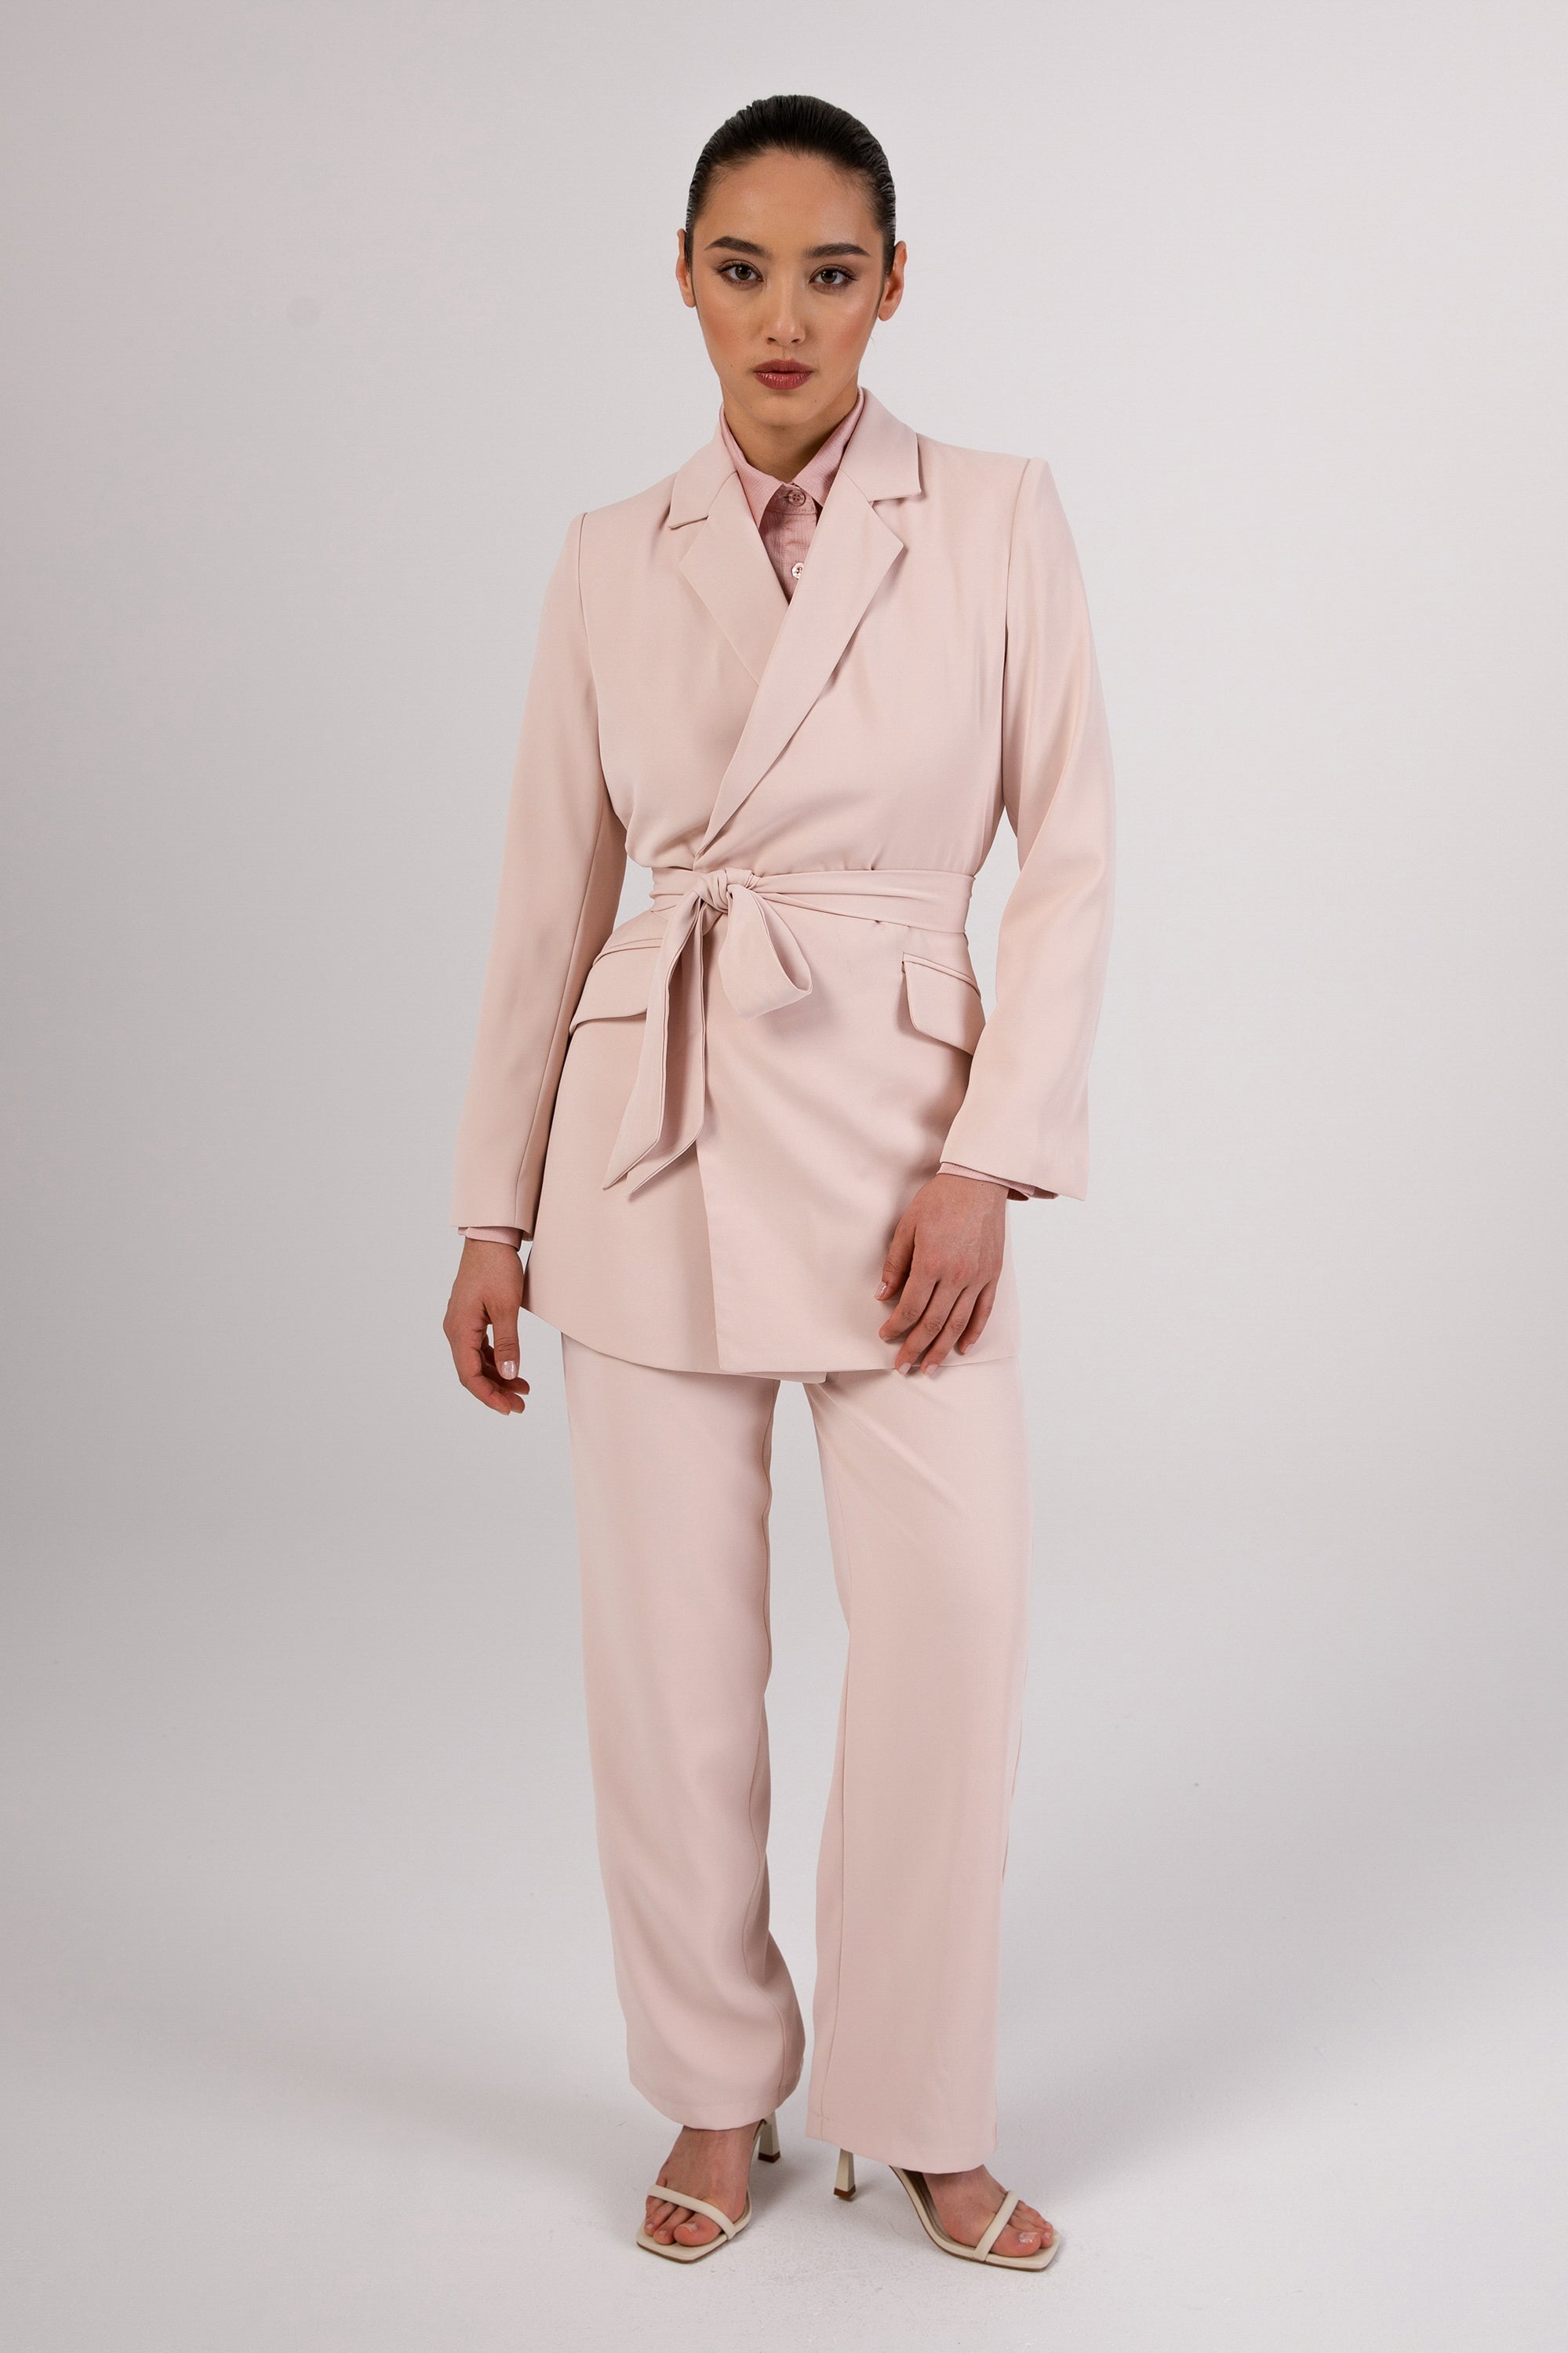 Maria Tie Waist Blazer - Pink Ivory Veiled Collection 